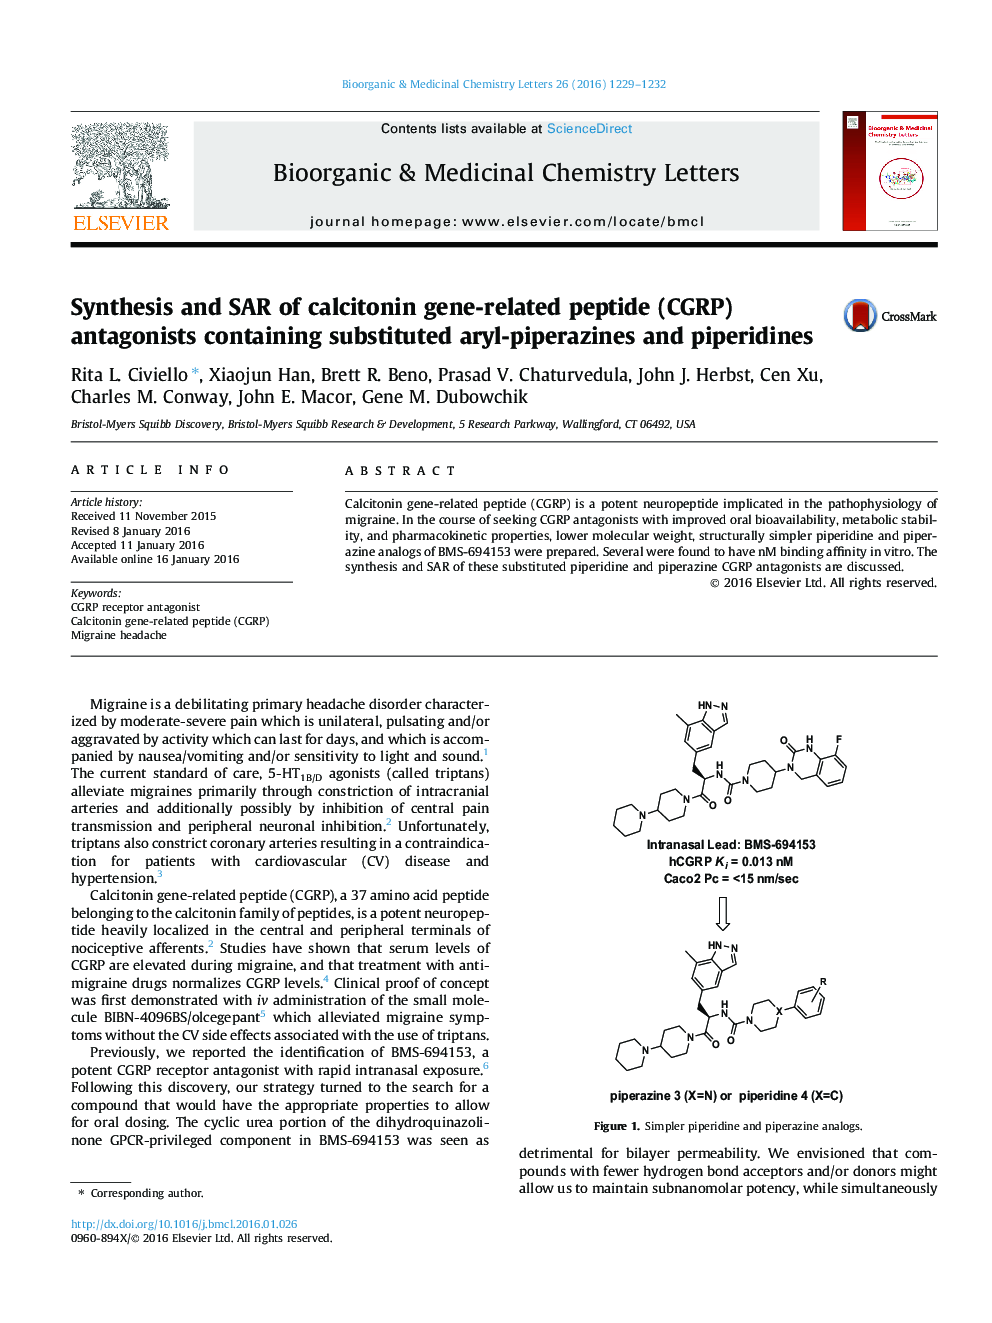 سنتز و SAR از آنتاگونیست‌های پپتید مرتبط با ژن کلسیتونین (CGRP) حاوی جایگزین آریل پیپرازین و پیپریدین